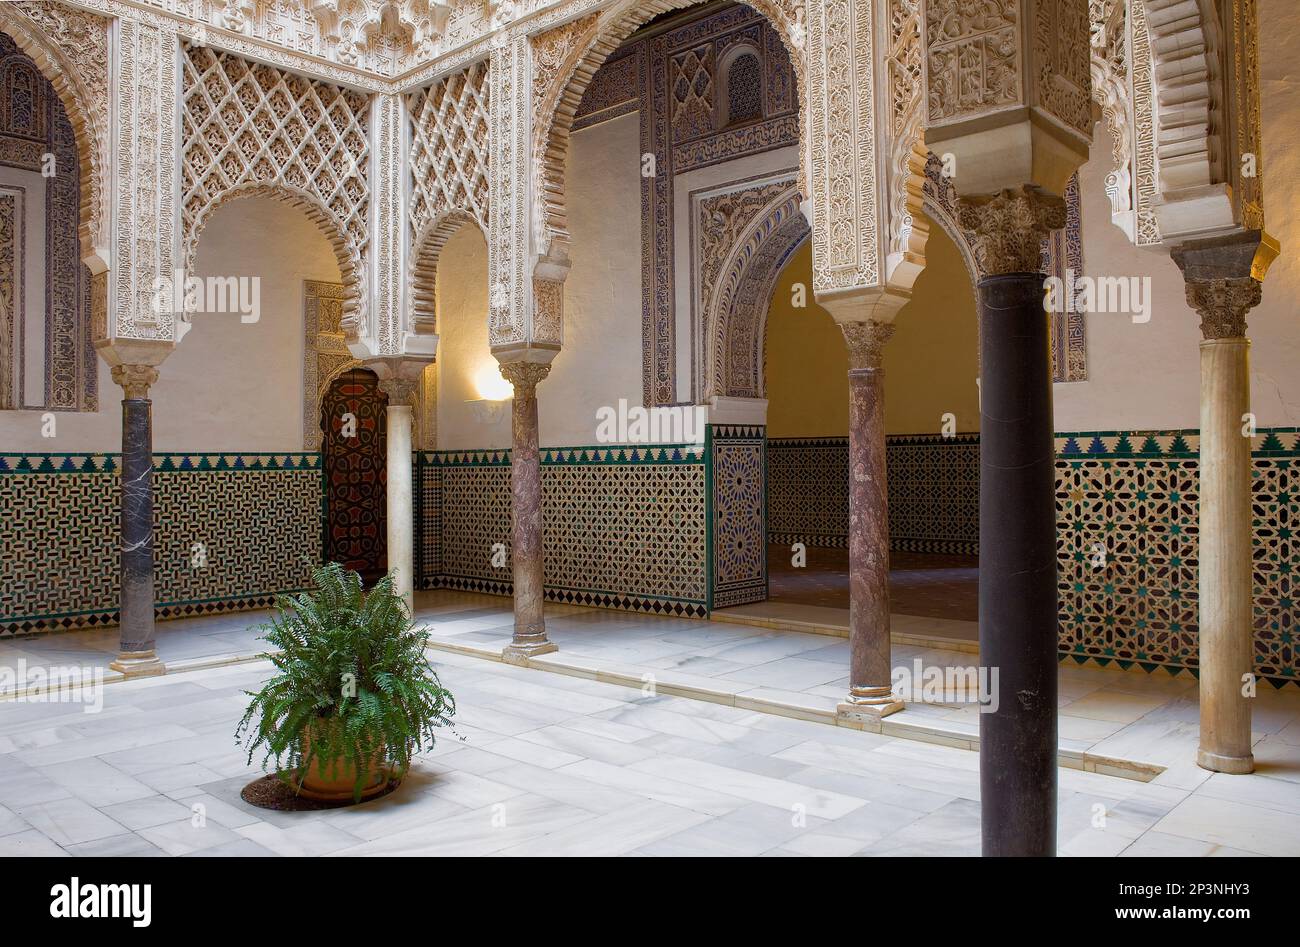 Alcazar Royal,'Patio de las Muñecas',Cour intérieure des poignets,Sevilla Andalousie,Espagne, Banque D'Images